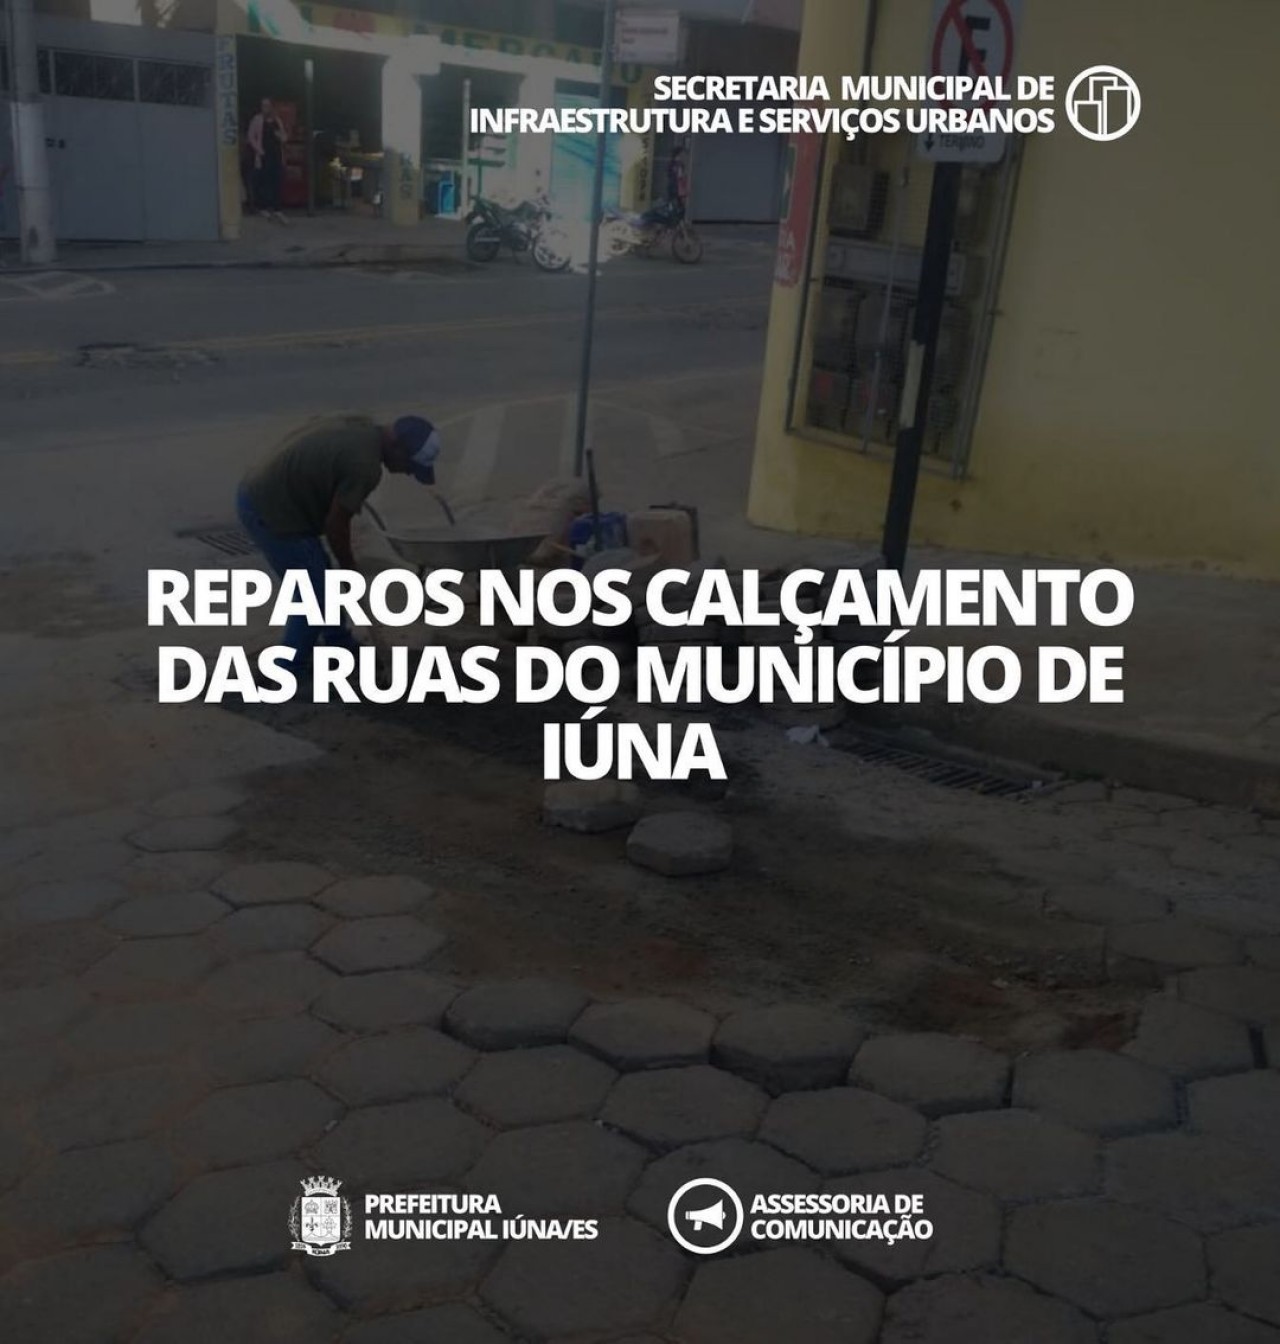 OBRA 126 - Reparos nos calçamentos das ruas do Município de Iúna